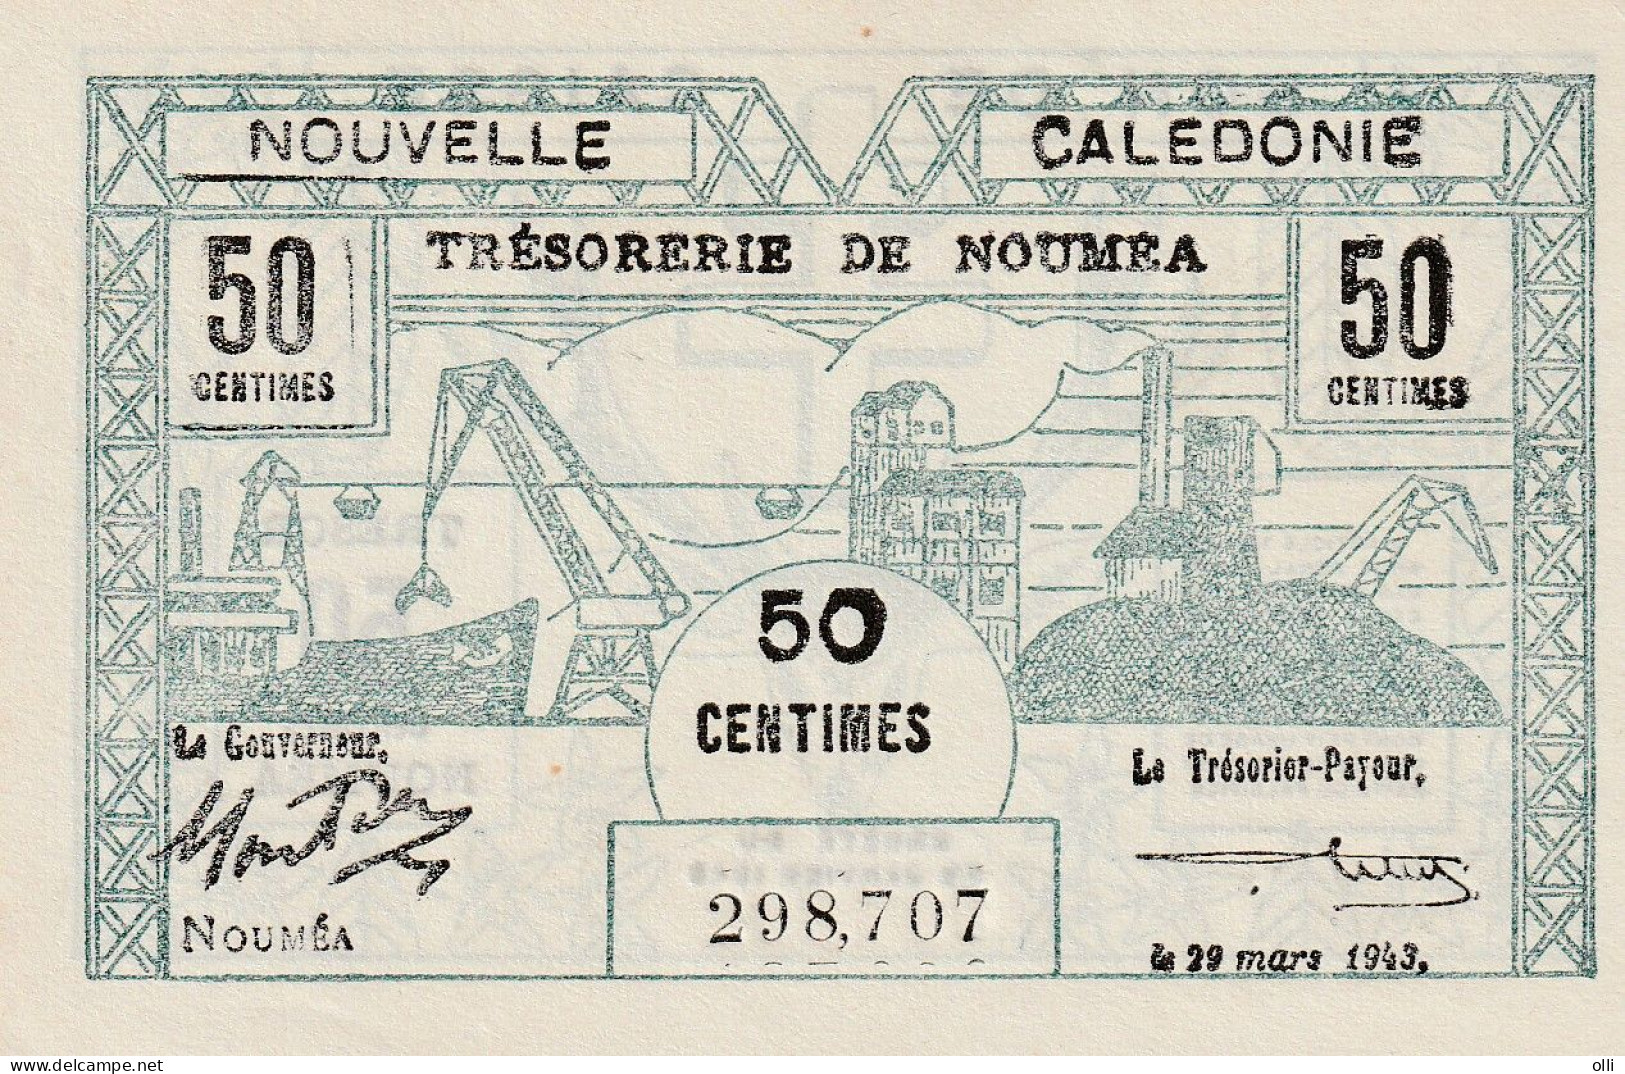 NEW CALEDONIA 50 CENTIMS 1943 AUNC - Nouvelle-Calédonie 1873-1985